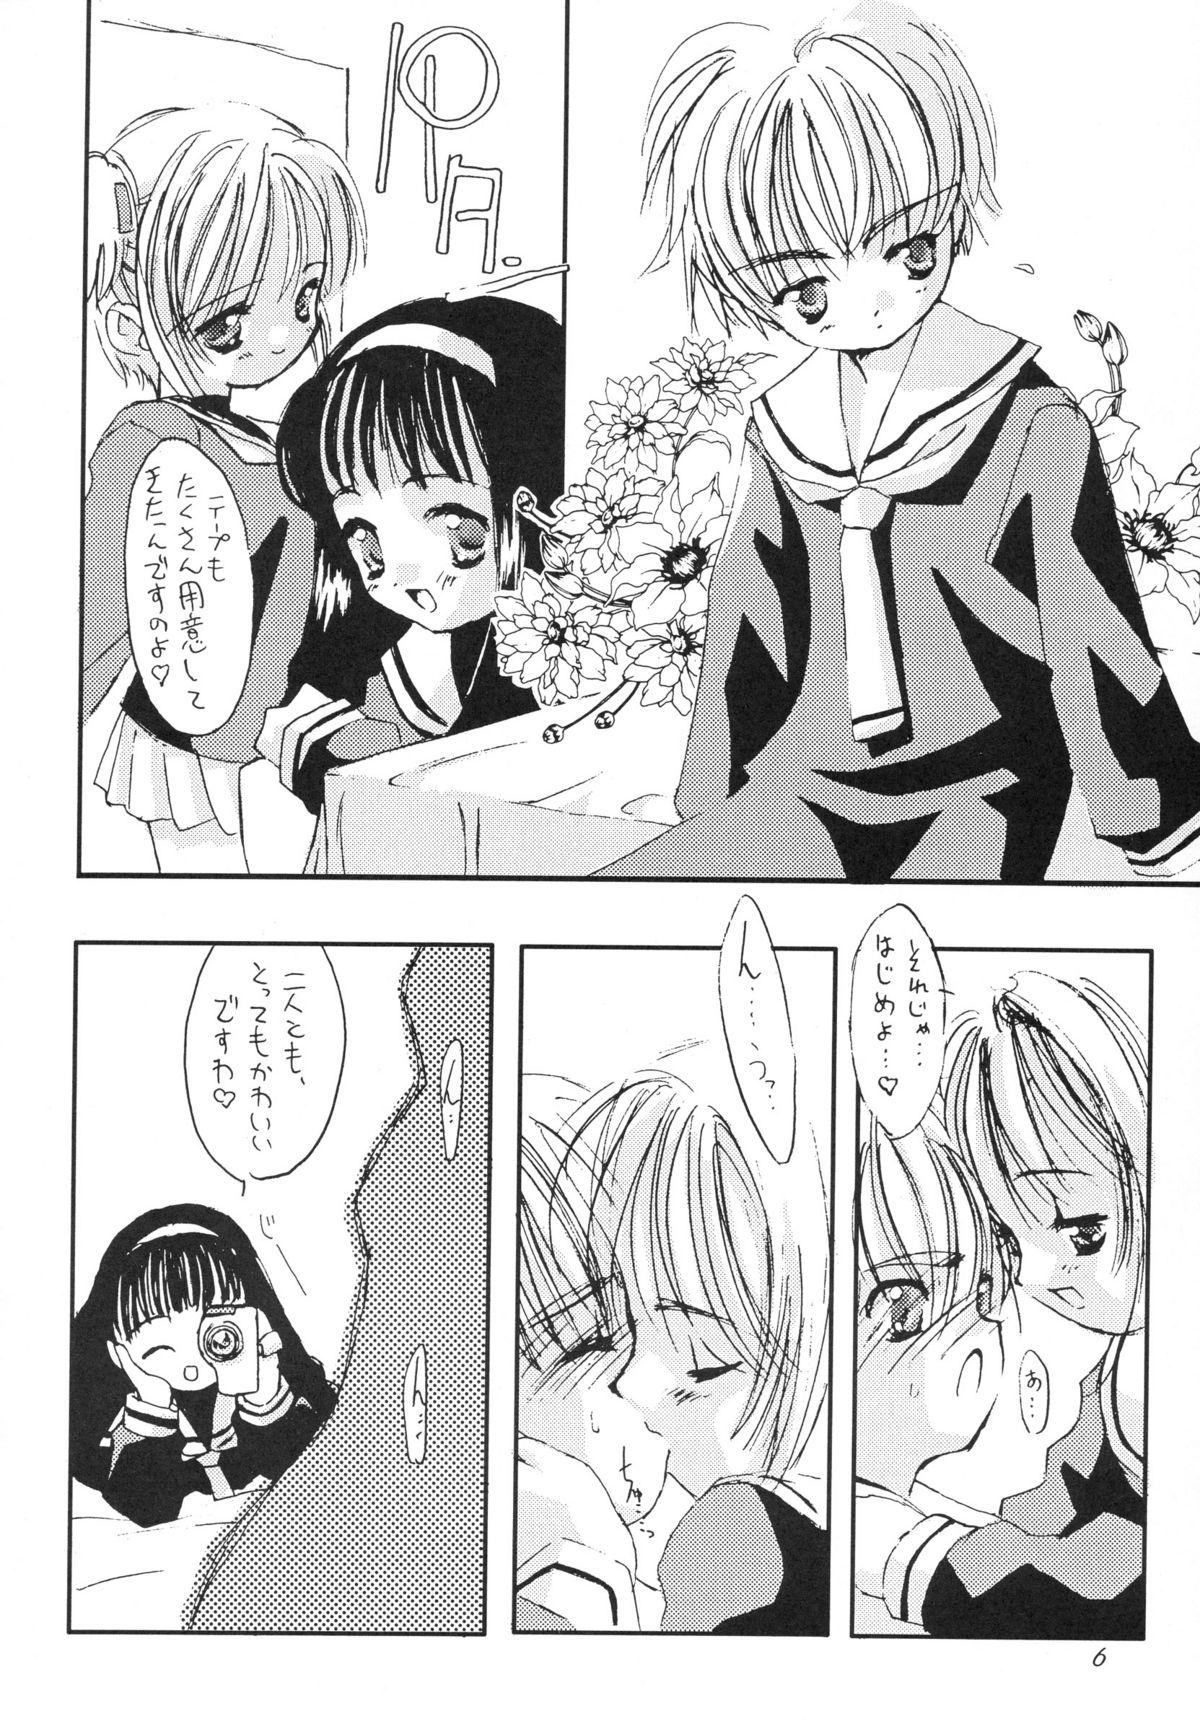 Bro Please Teach Me 2. - Cardcaptor sakura Foreplay - Page 7